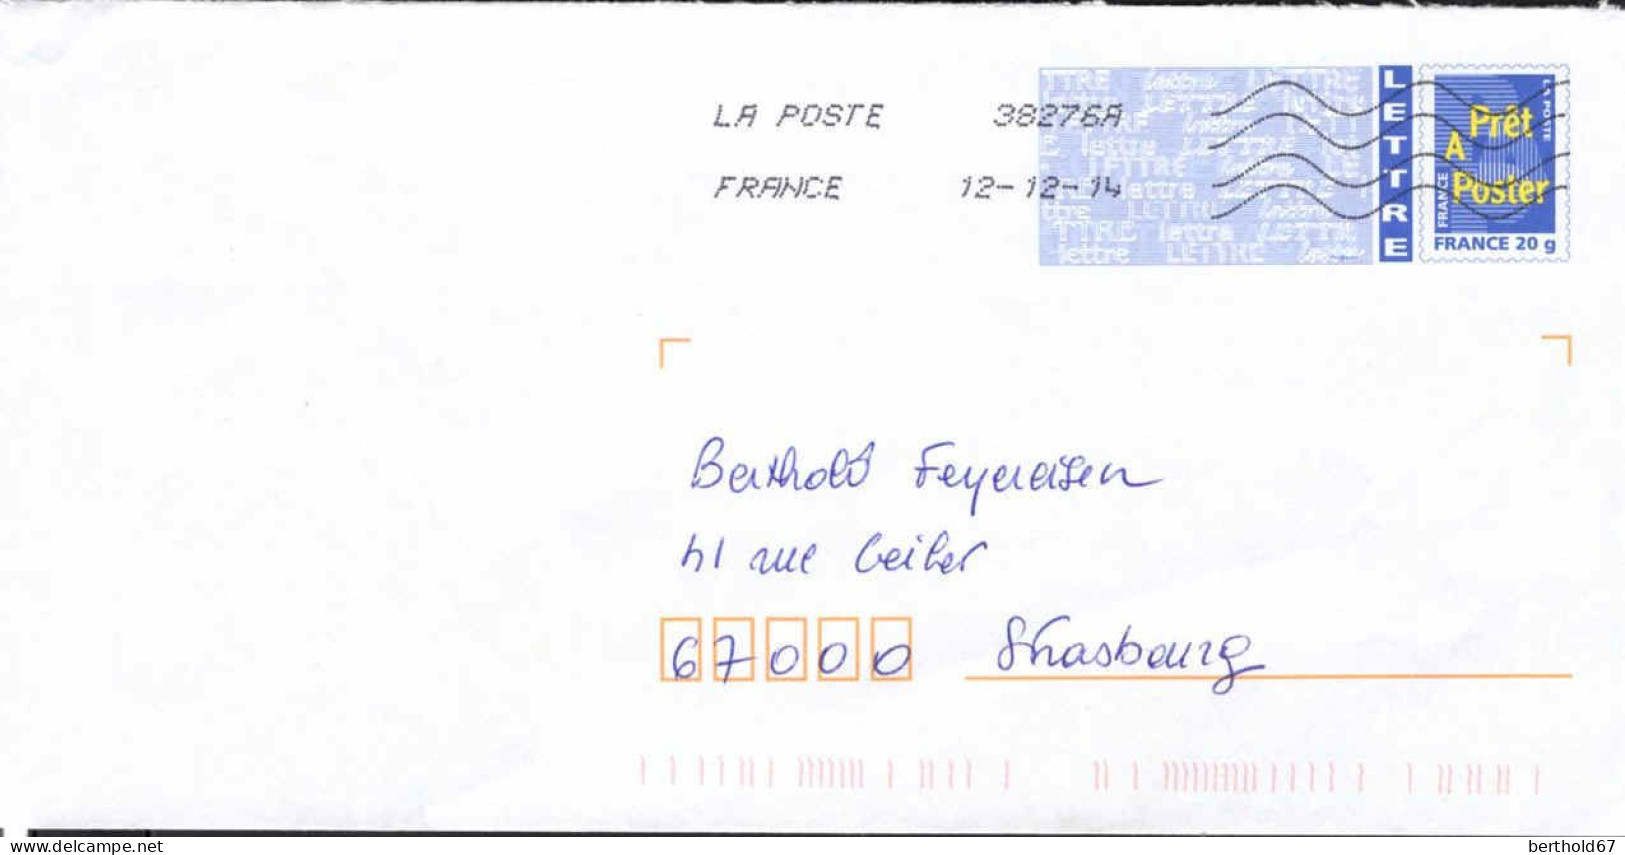 France Entier-P Obl (5071) PAP Fond De Sécurité Bleu Long (Lign.Ondulées & Code ROC) 38276A 12-12-14 B2K/06U373 - PAP: Aufdrucke/Blaues Logo